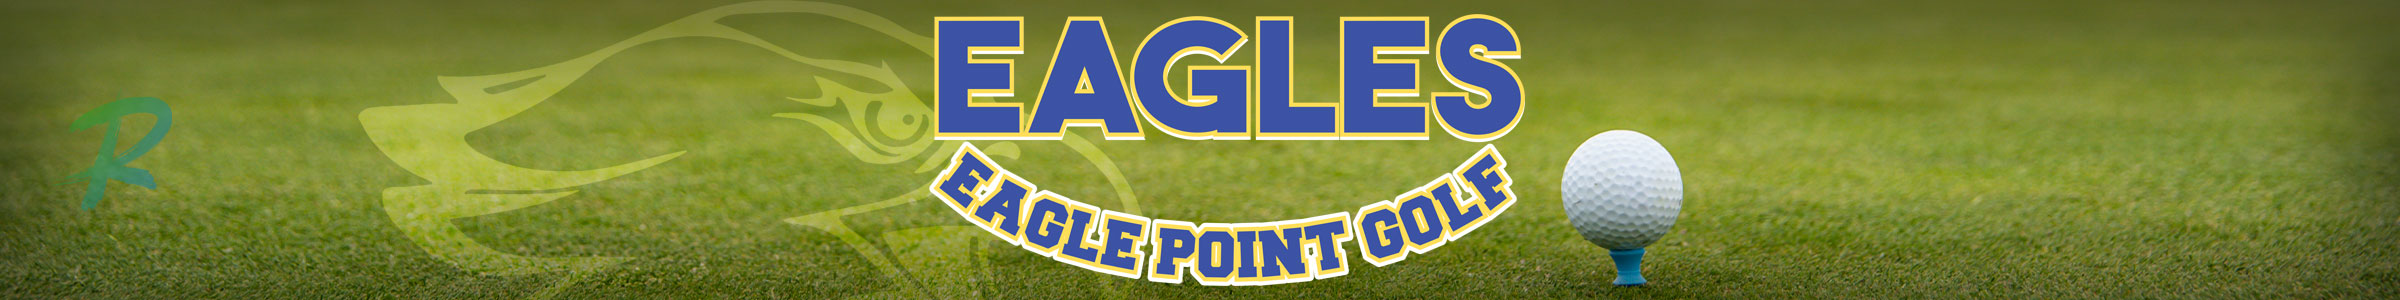 Eagle Point Golf